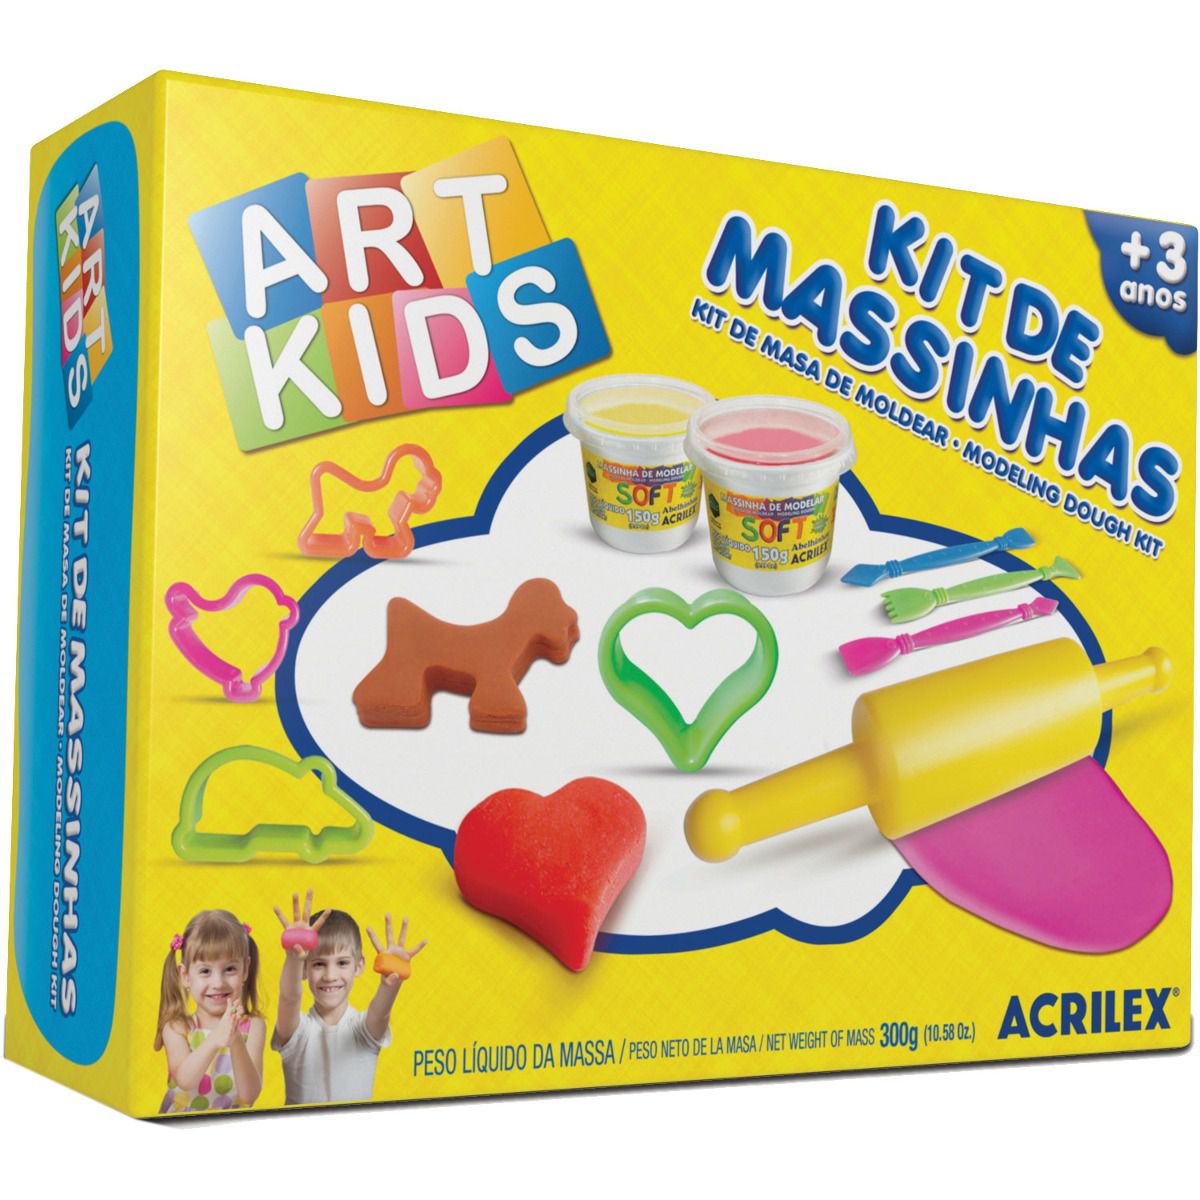 Massinha de Modelar Criativa Art Kids com Moldes ref 40003 Acrilex